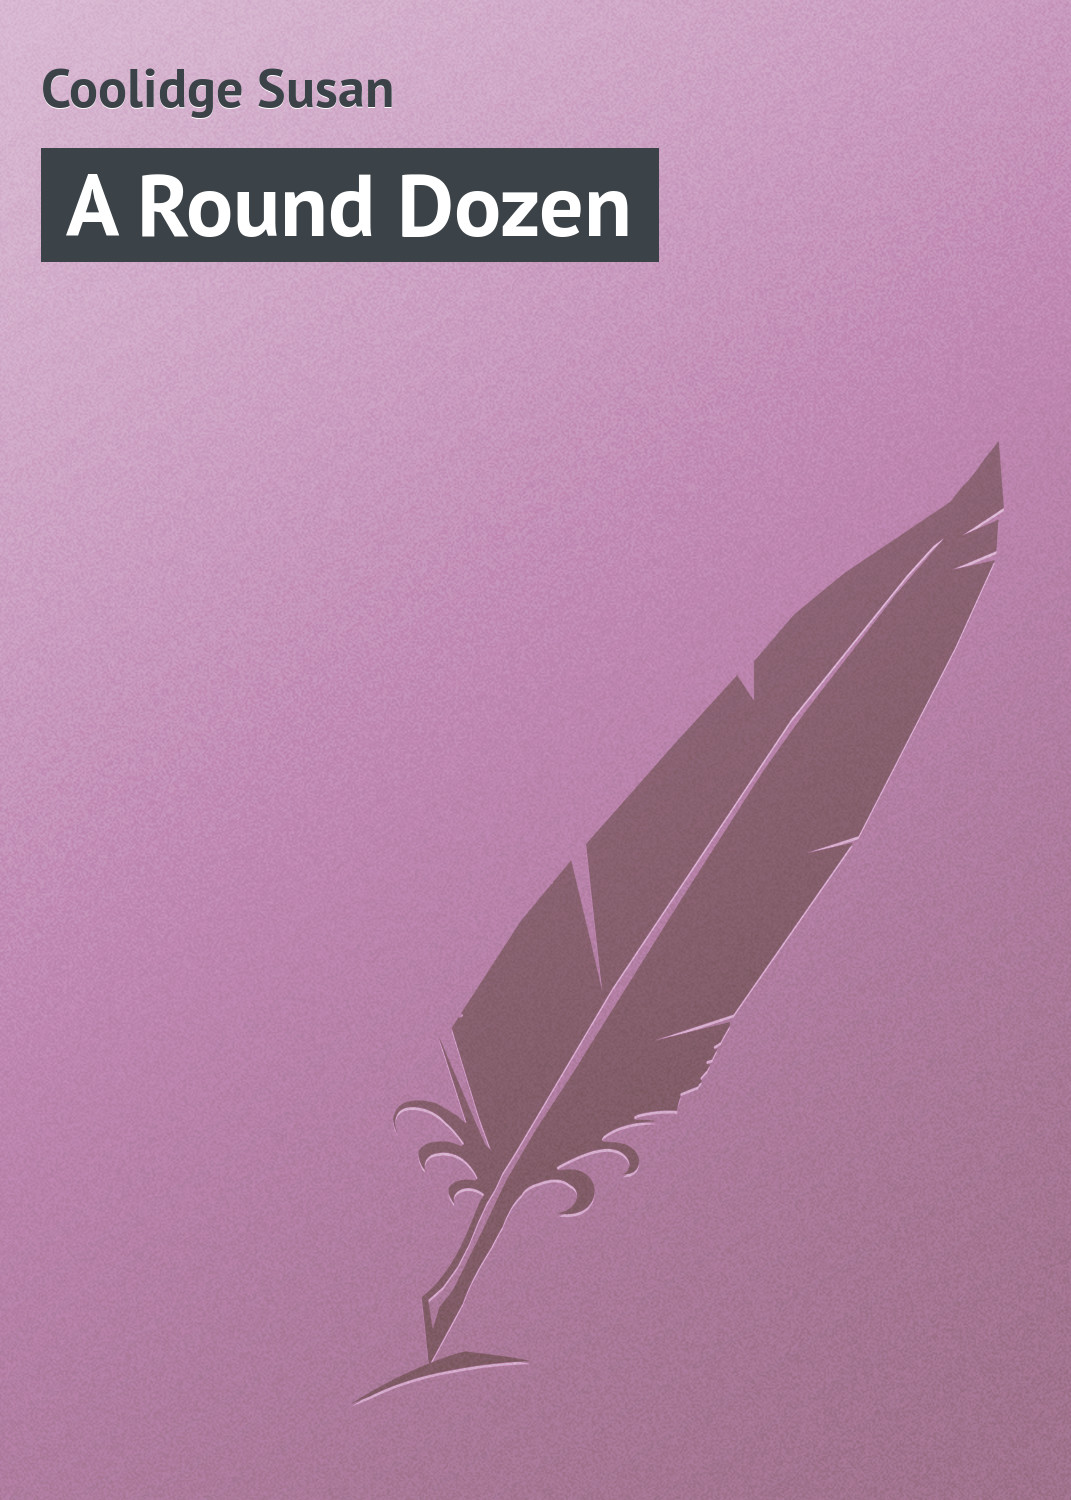 Книга A Round Dozen из серии , созданная Susan Coolidge, может относится к жанру Зарубежная классика. Стоимость электронной книги A Round Dozen с идентификатором 23157387 составляет 5.99 руб.